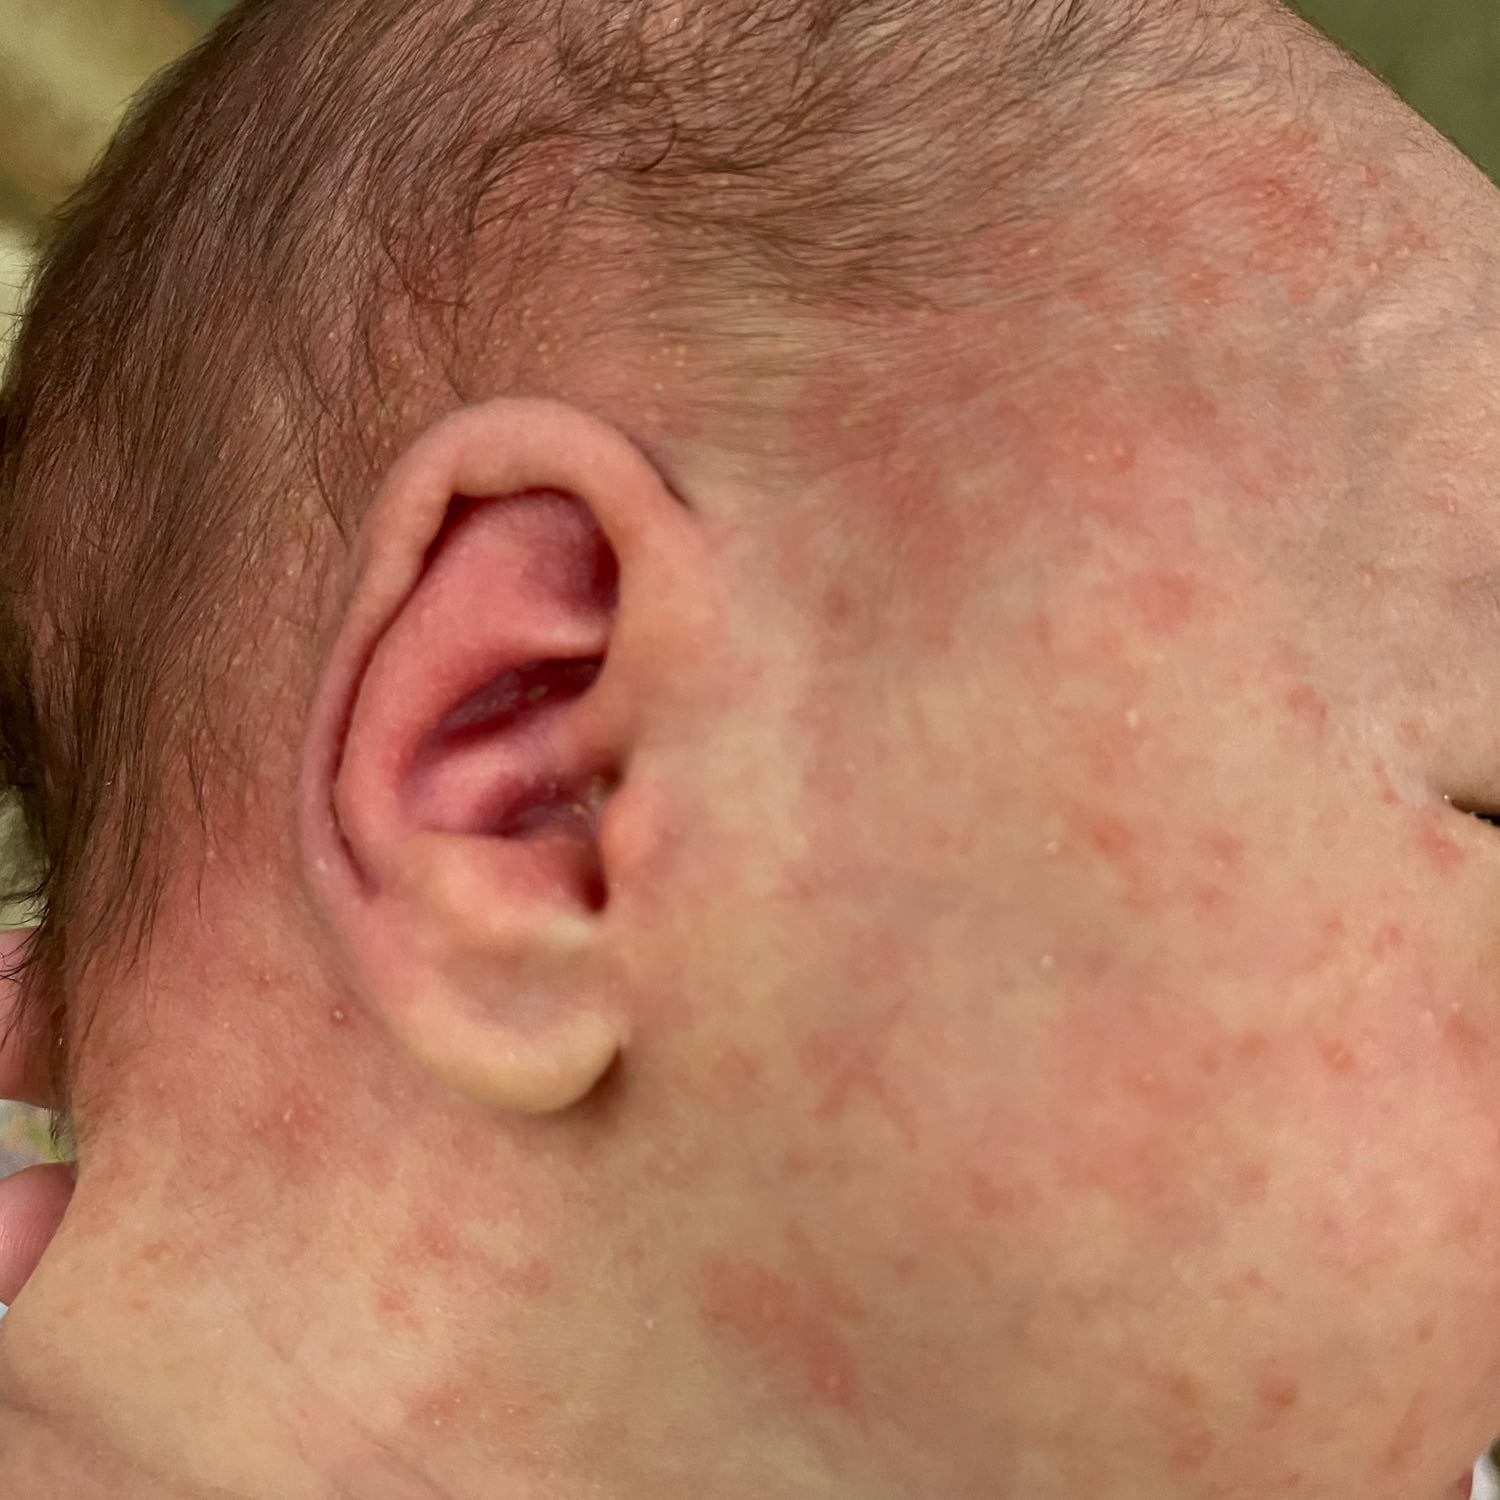 ребенку месяц на лице и шее сыпь появились можно чем нибудь мазать беп... 